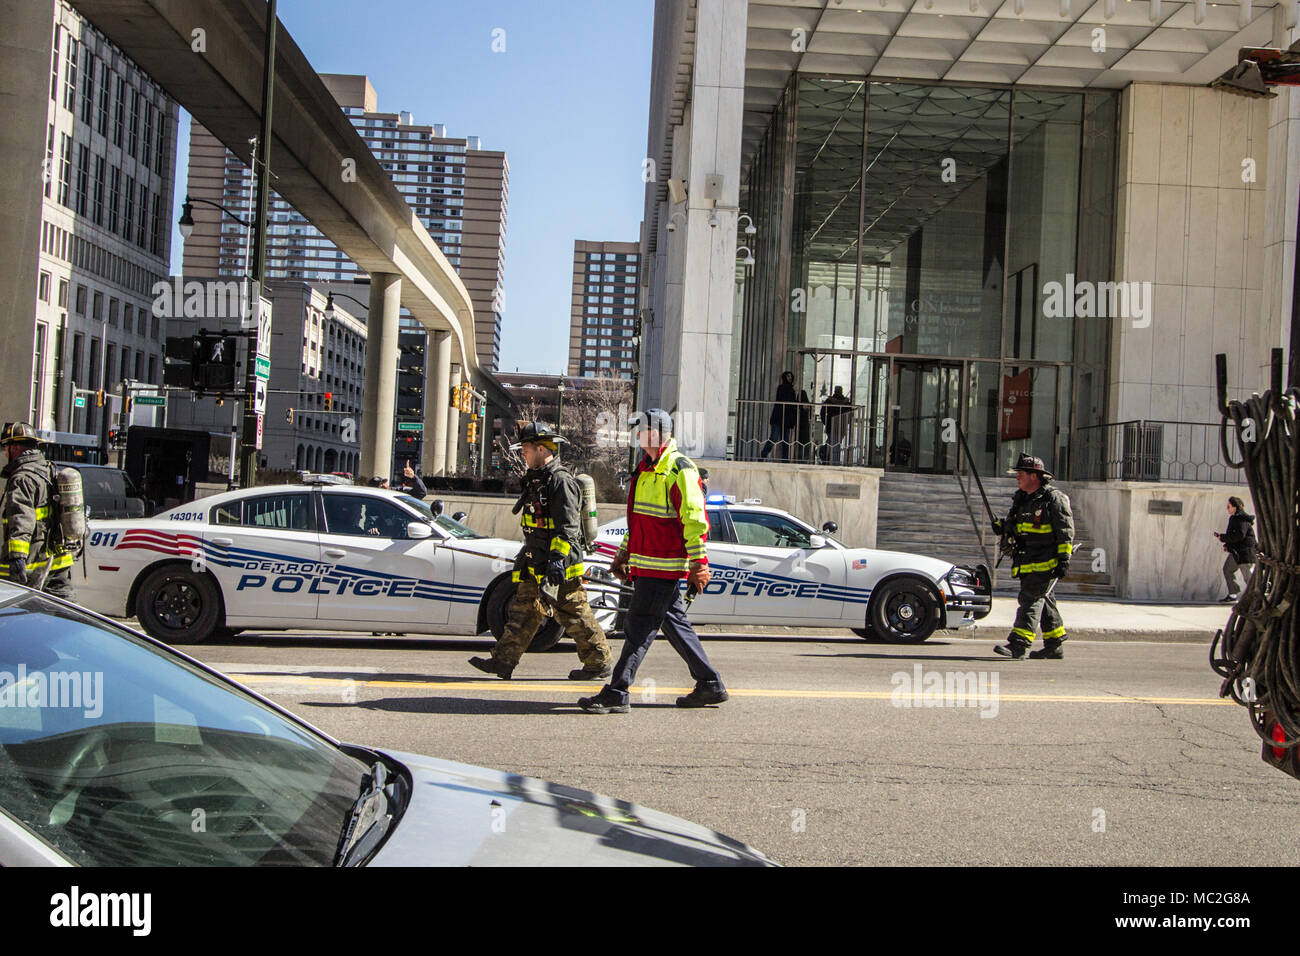 Detroit, Michigan, USA - 22. März 2018: Feuerwehr und Polizei, bei einer Aufforderung im Geschäftsviertel von Detroit. Stockfoto